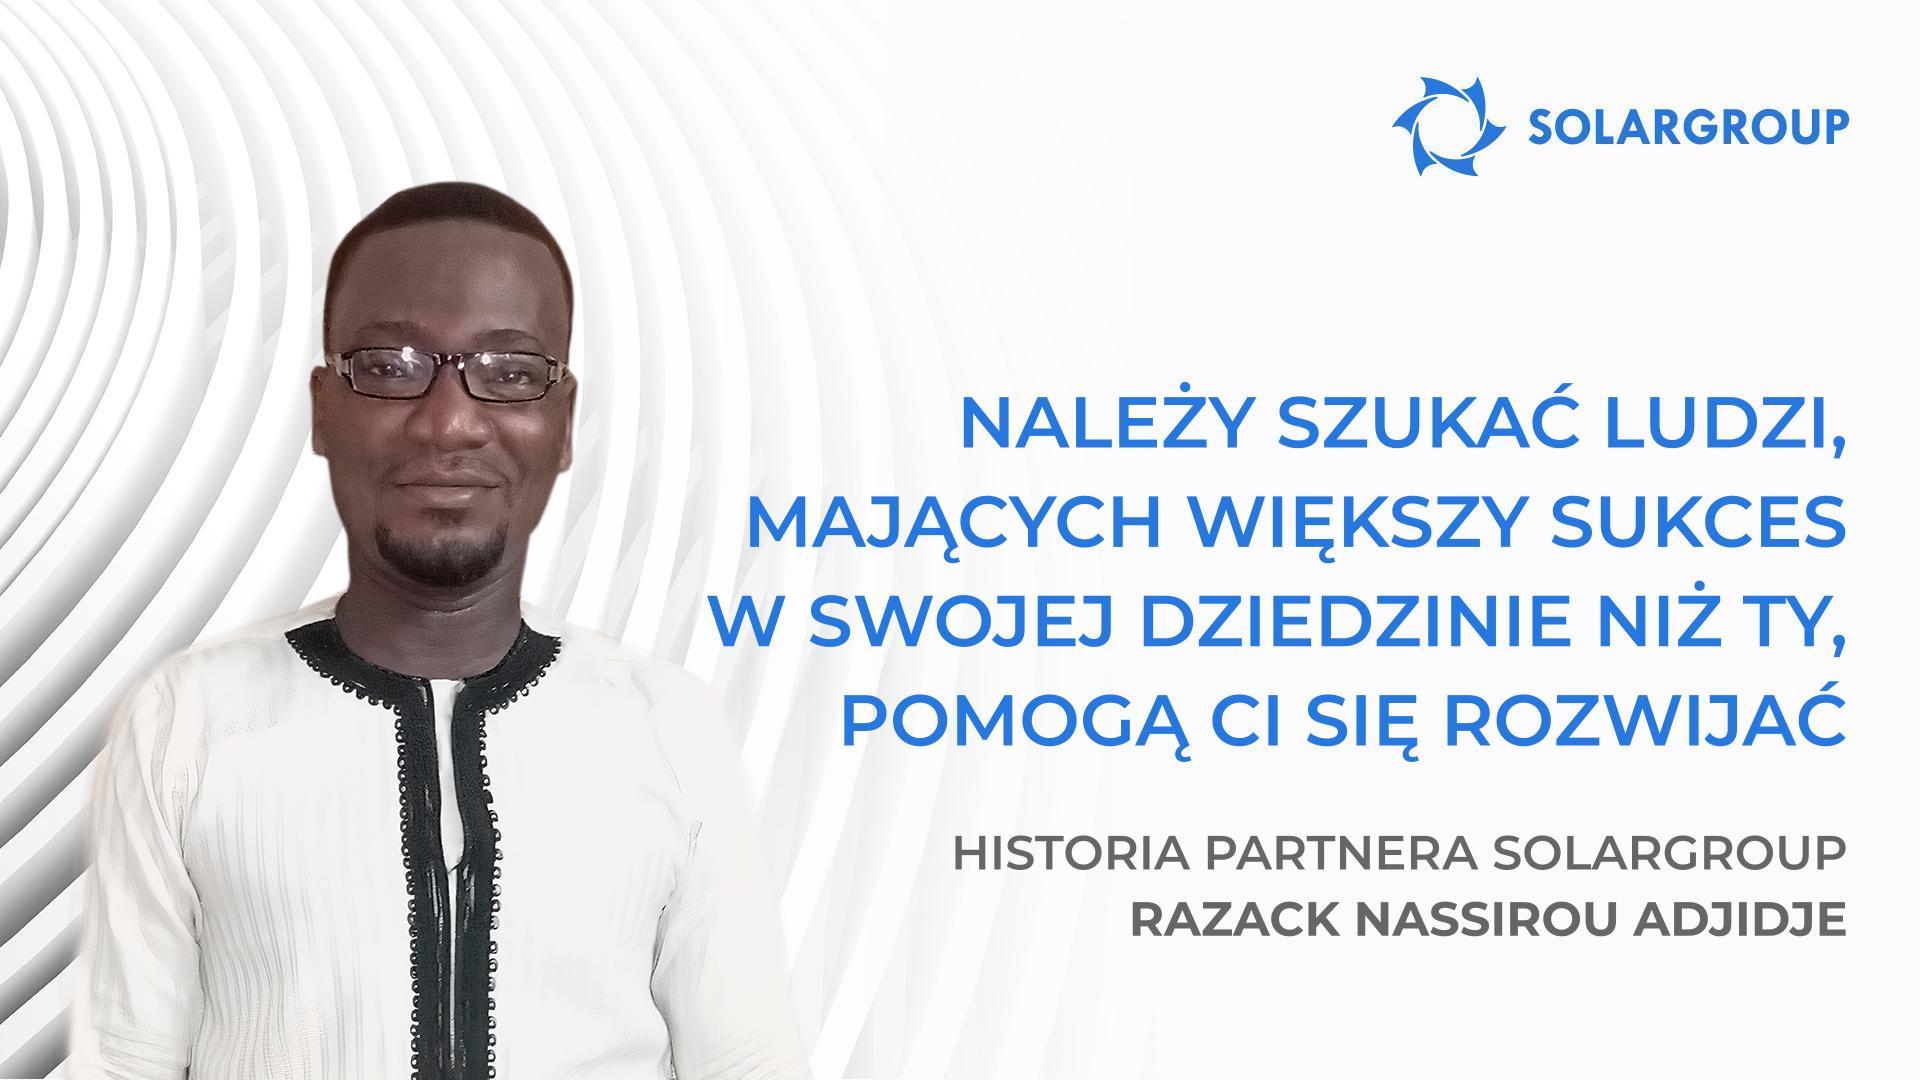 Firmy odnoszące sukcesy składają się z ludzi odnoszących sukcesy | Historia partnera SOLARGROUP Razack Nassirou Adjidje